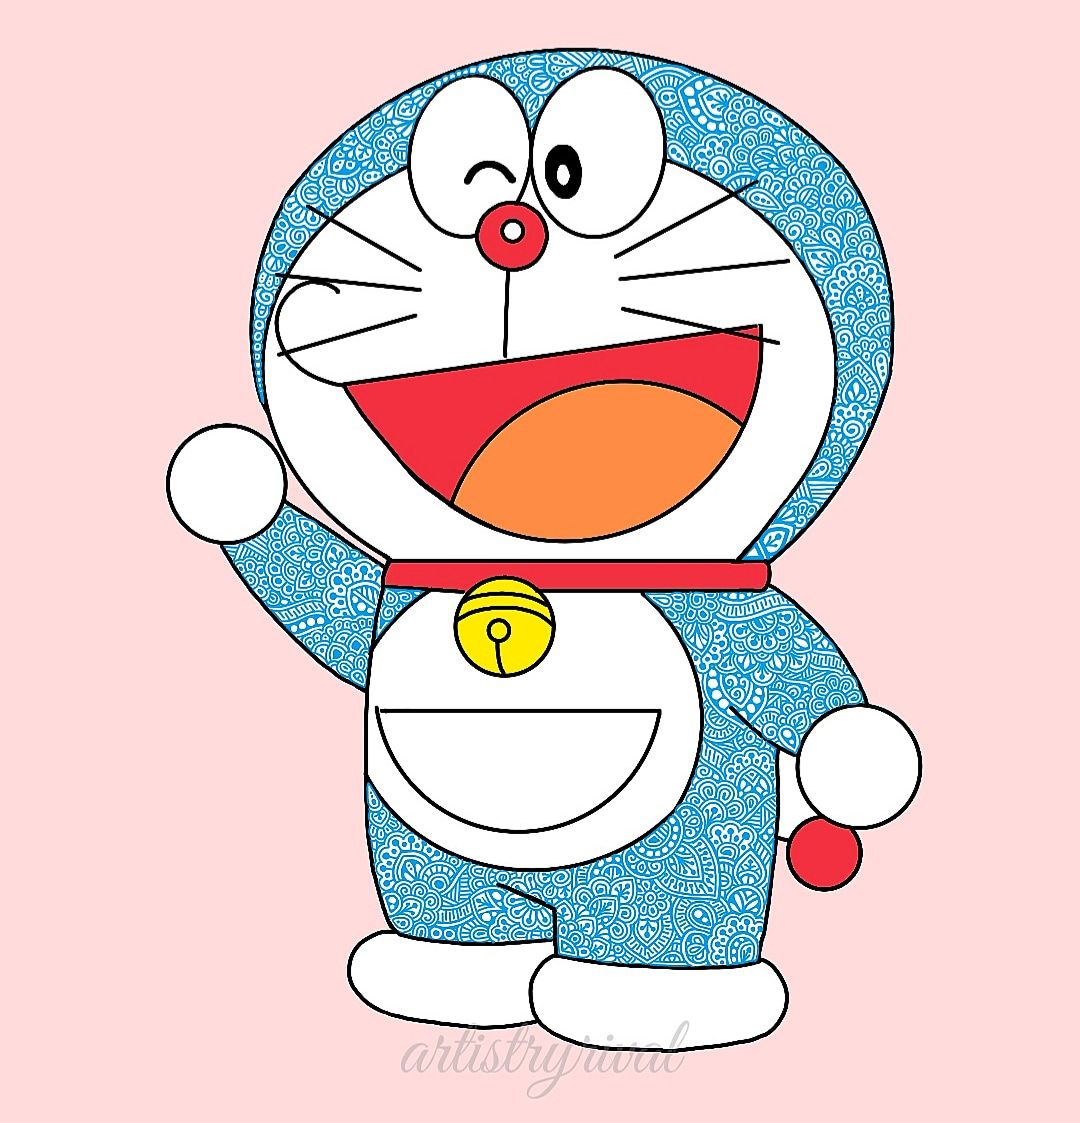 Tìm Hiểu 97+ Vẽ Hình Doraemon Cute Hay Nhất - Thtantai2.Edu.Vn